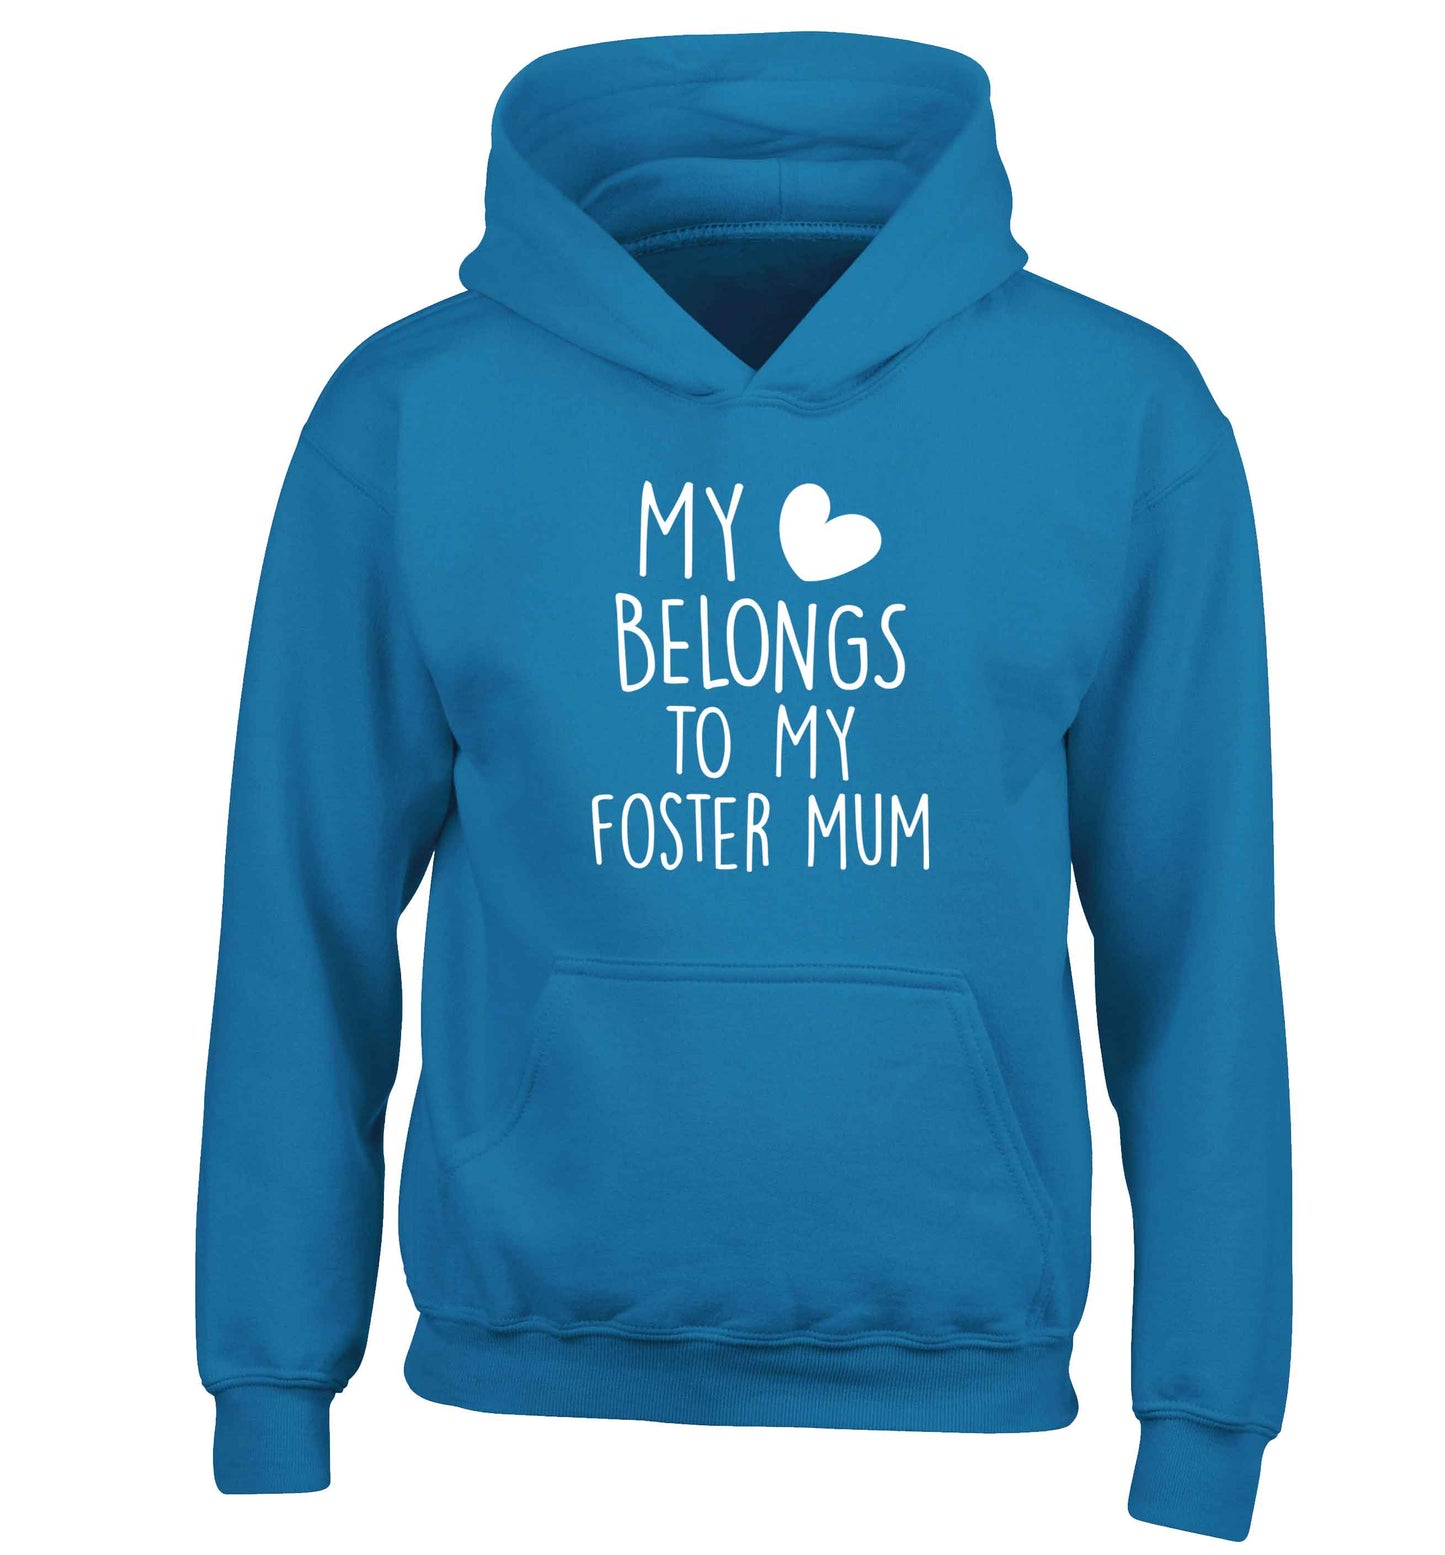 My heart belongs to my foster mum children's blue hoodie 12-13 Years